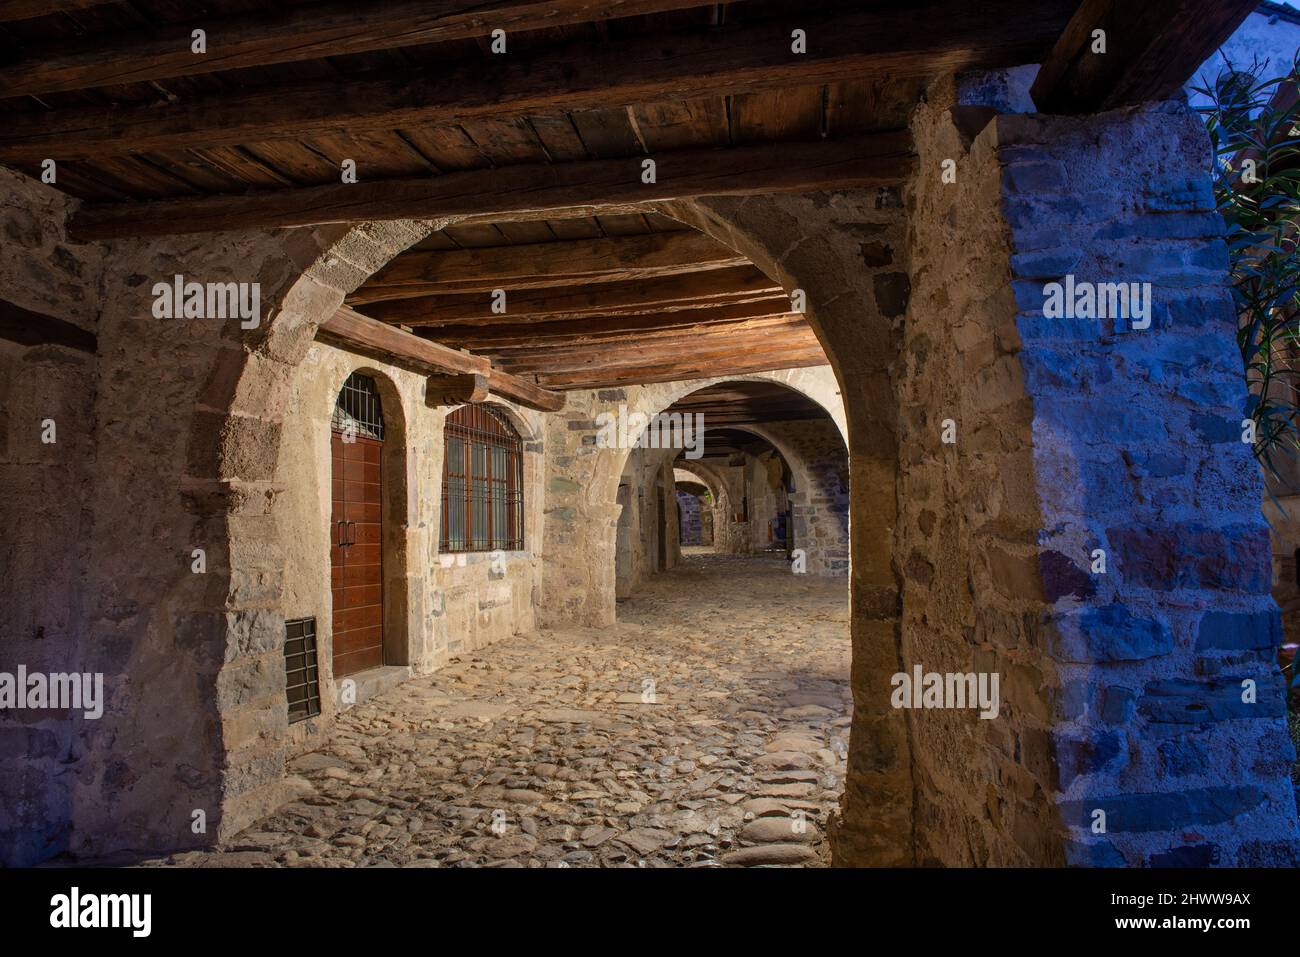 Camerata cornello del Tasso Medieval village in Lombardy Stock Photo